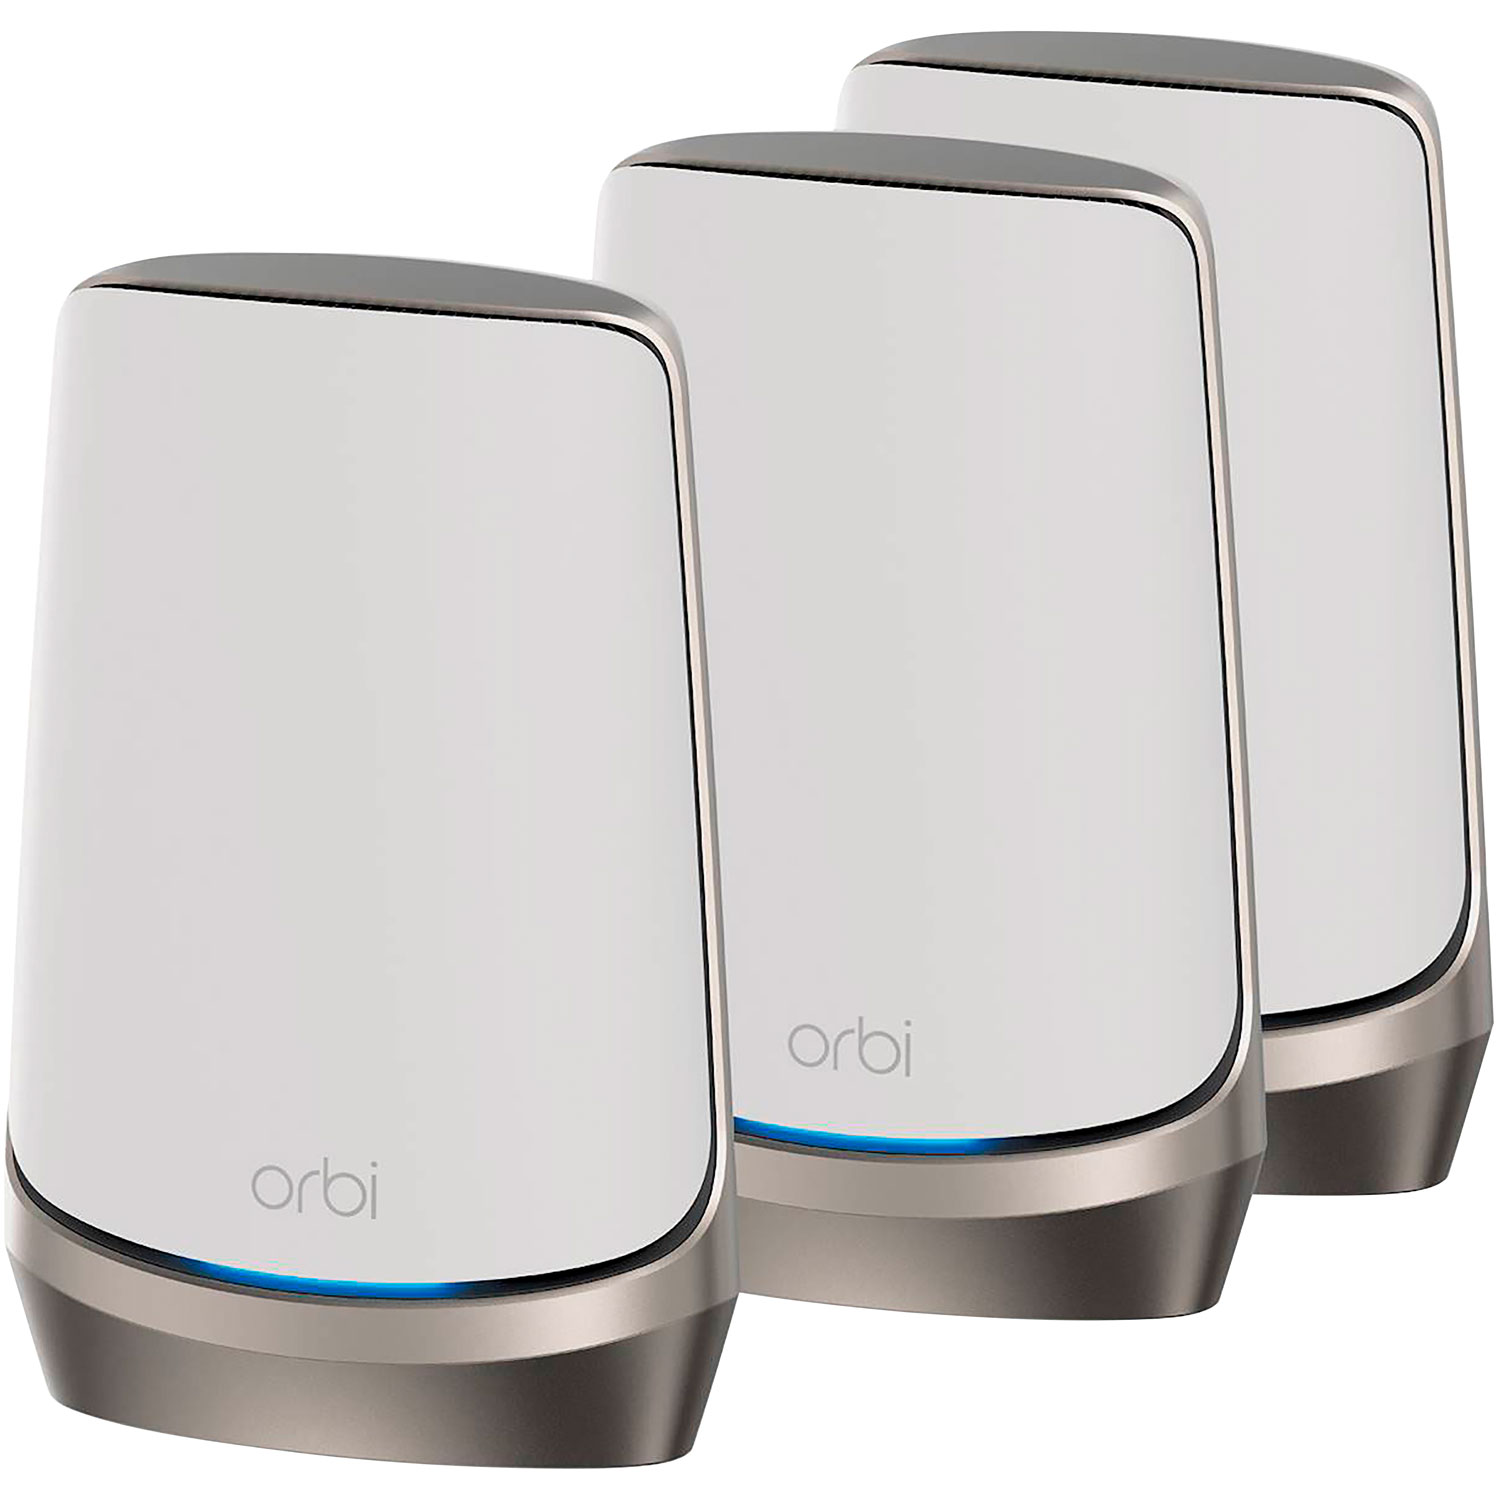 NETGEAR Orbi AX11000 Whole Home Mesh Wi-Fi 6E System (RBKE963) - 3 Pack